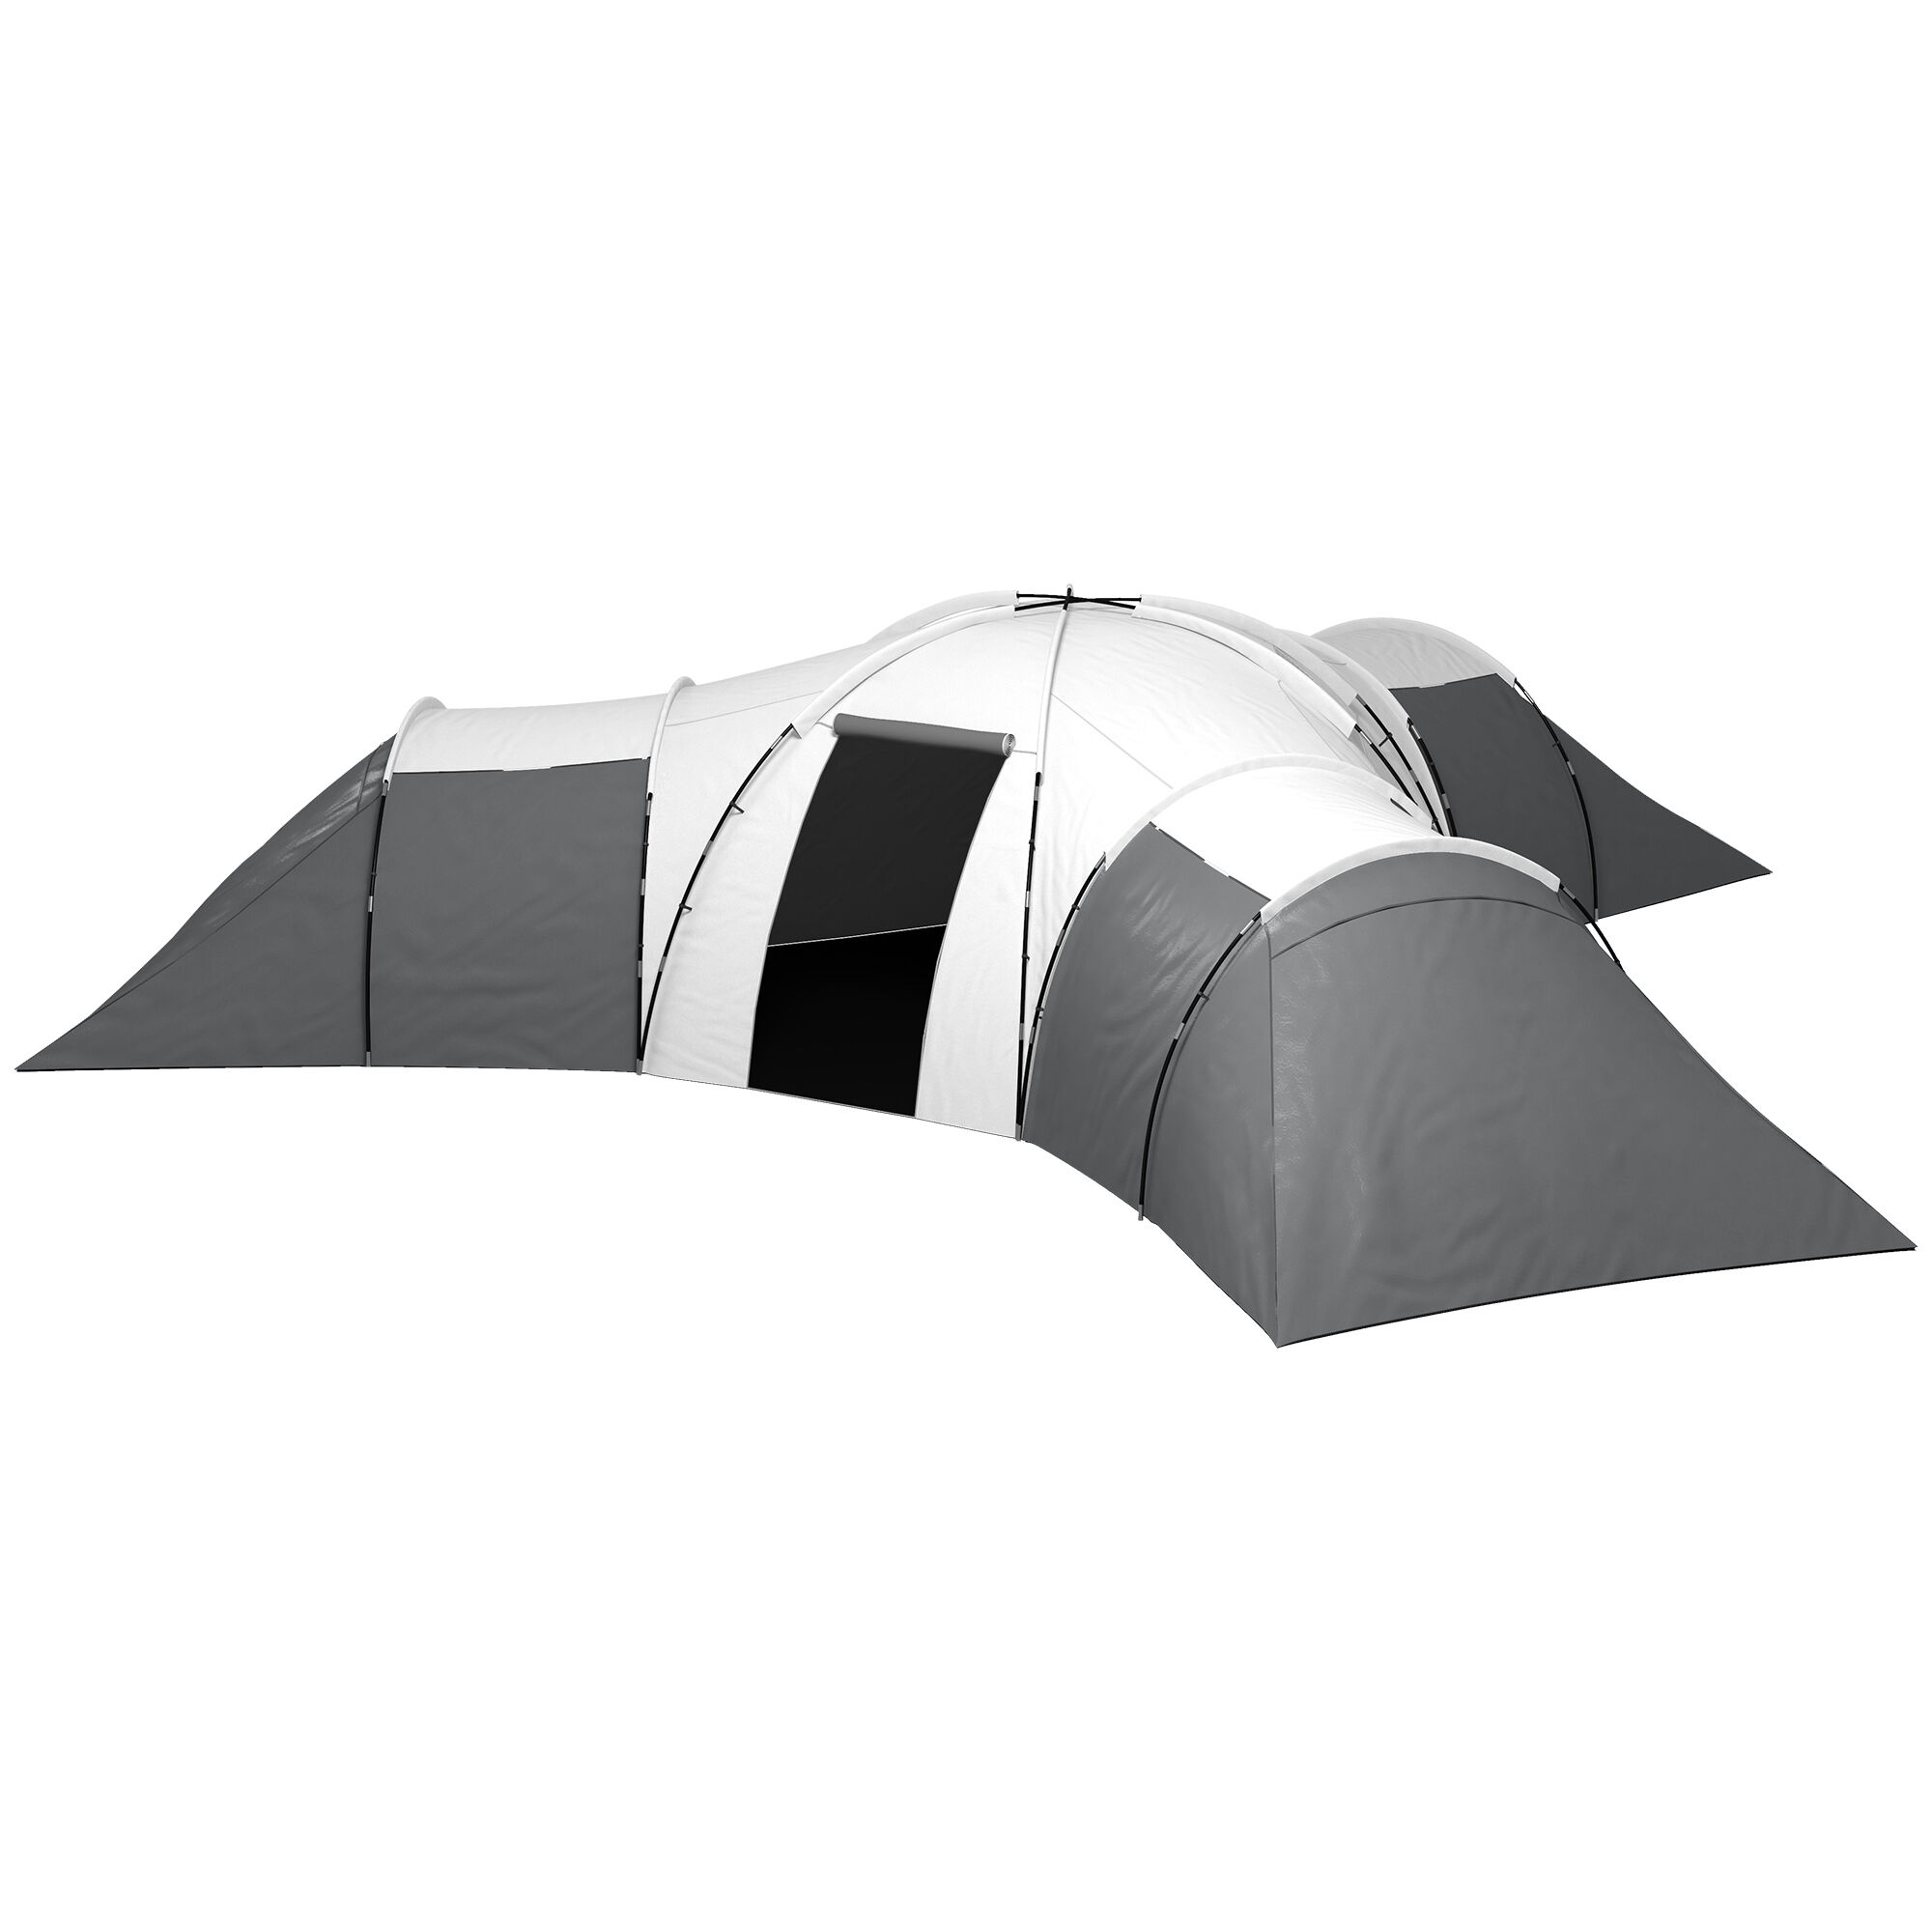 Outsunny Tenda da Campeggio 6-9 Persone Impermeabile con 3 Aree Notte, Soggiorno e Portico, in tessuto Oxford, Grigio